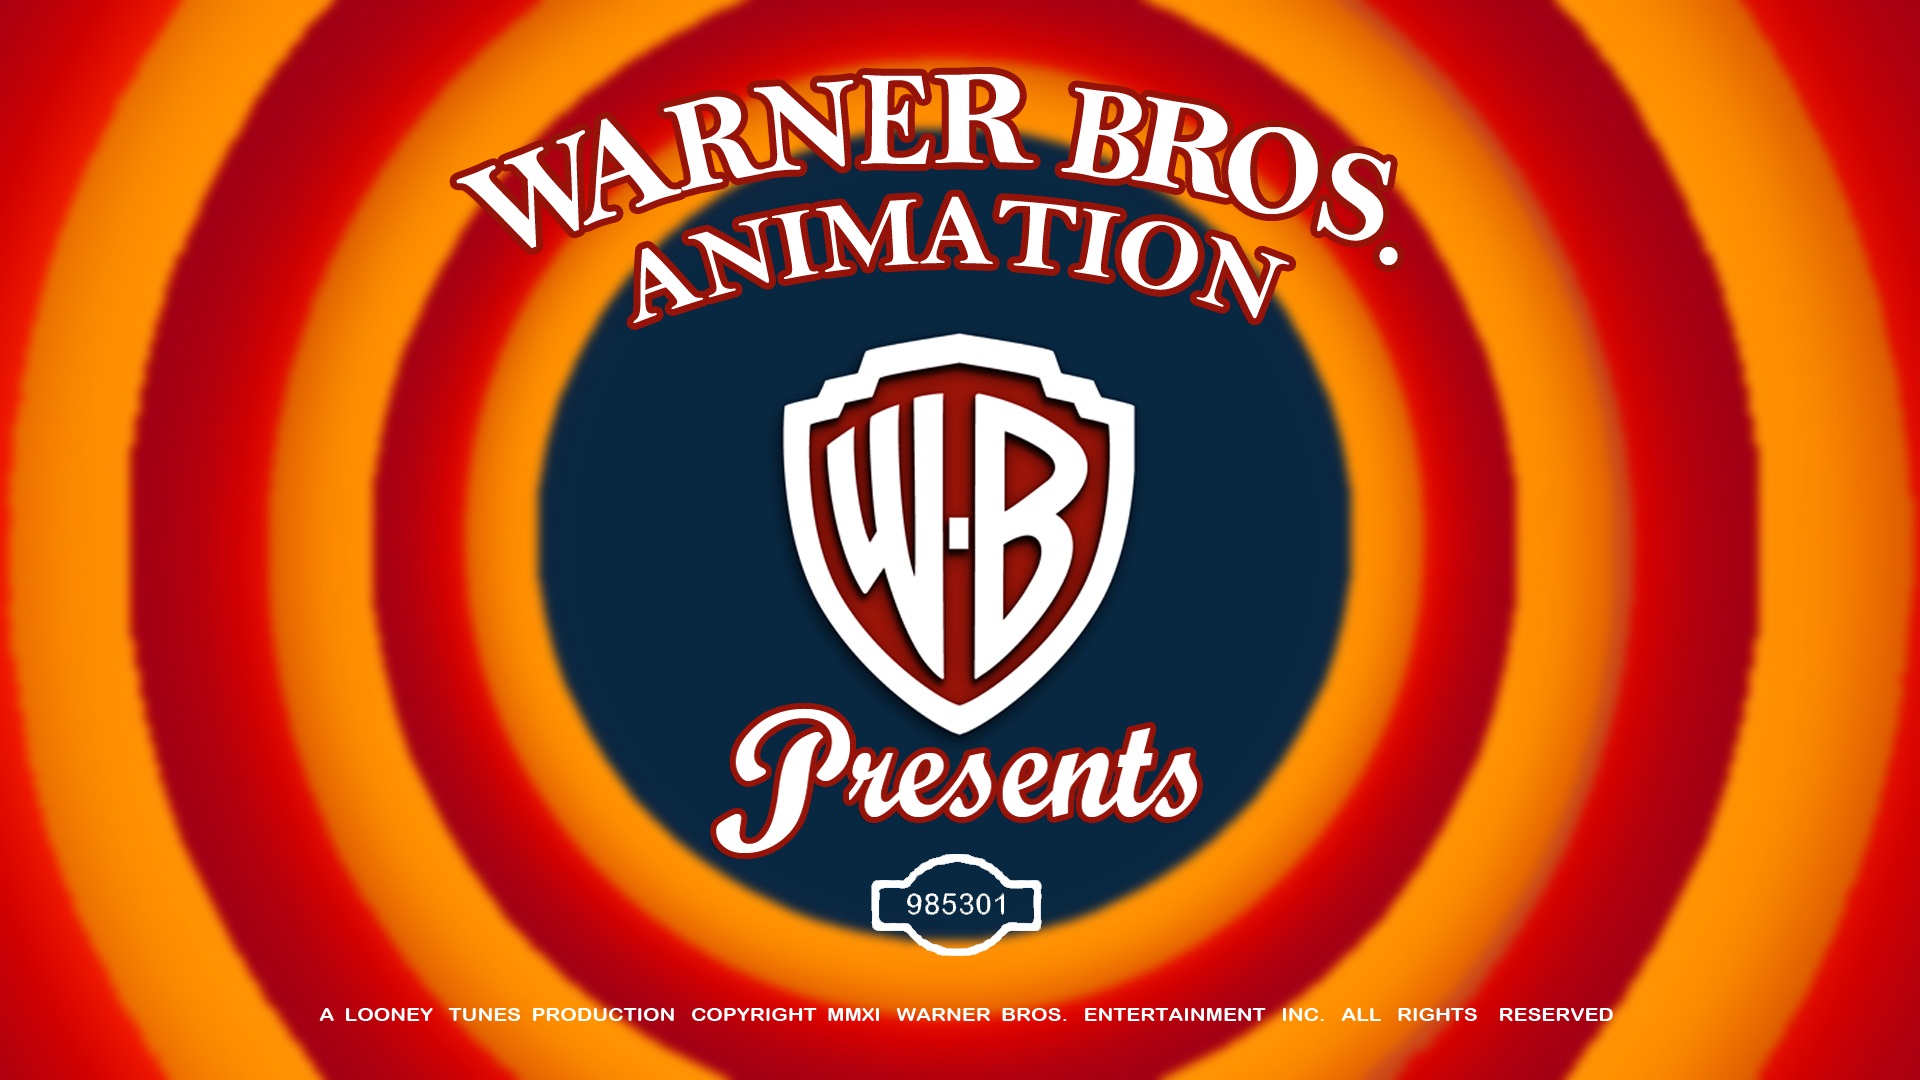 Wallpaper Warner Bros Animation Studio Jpg